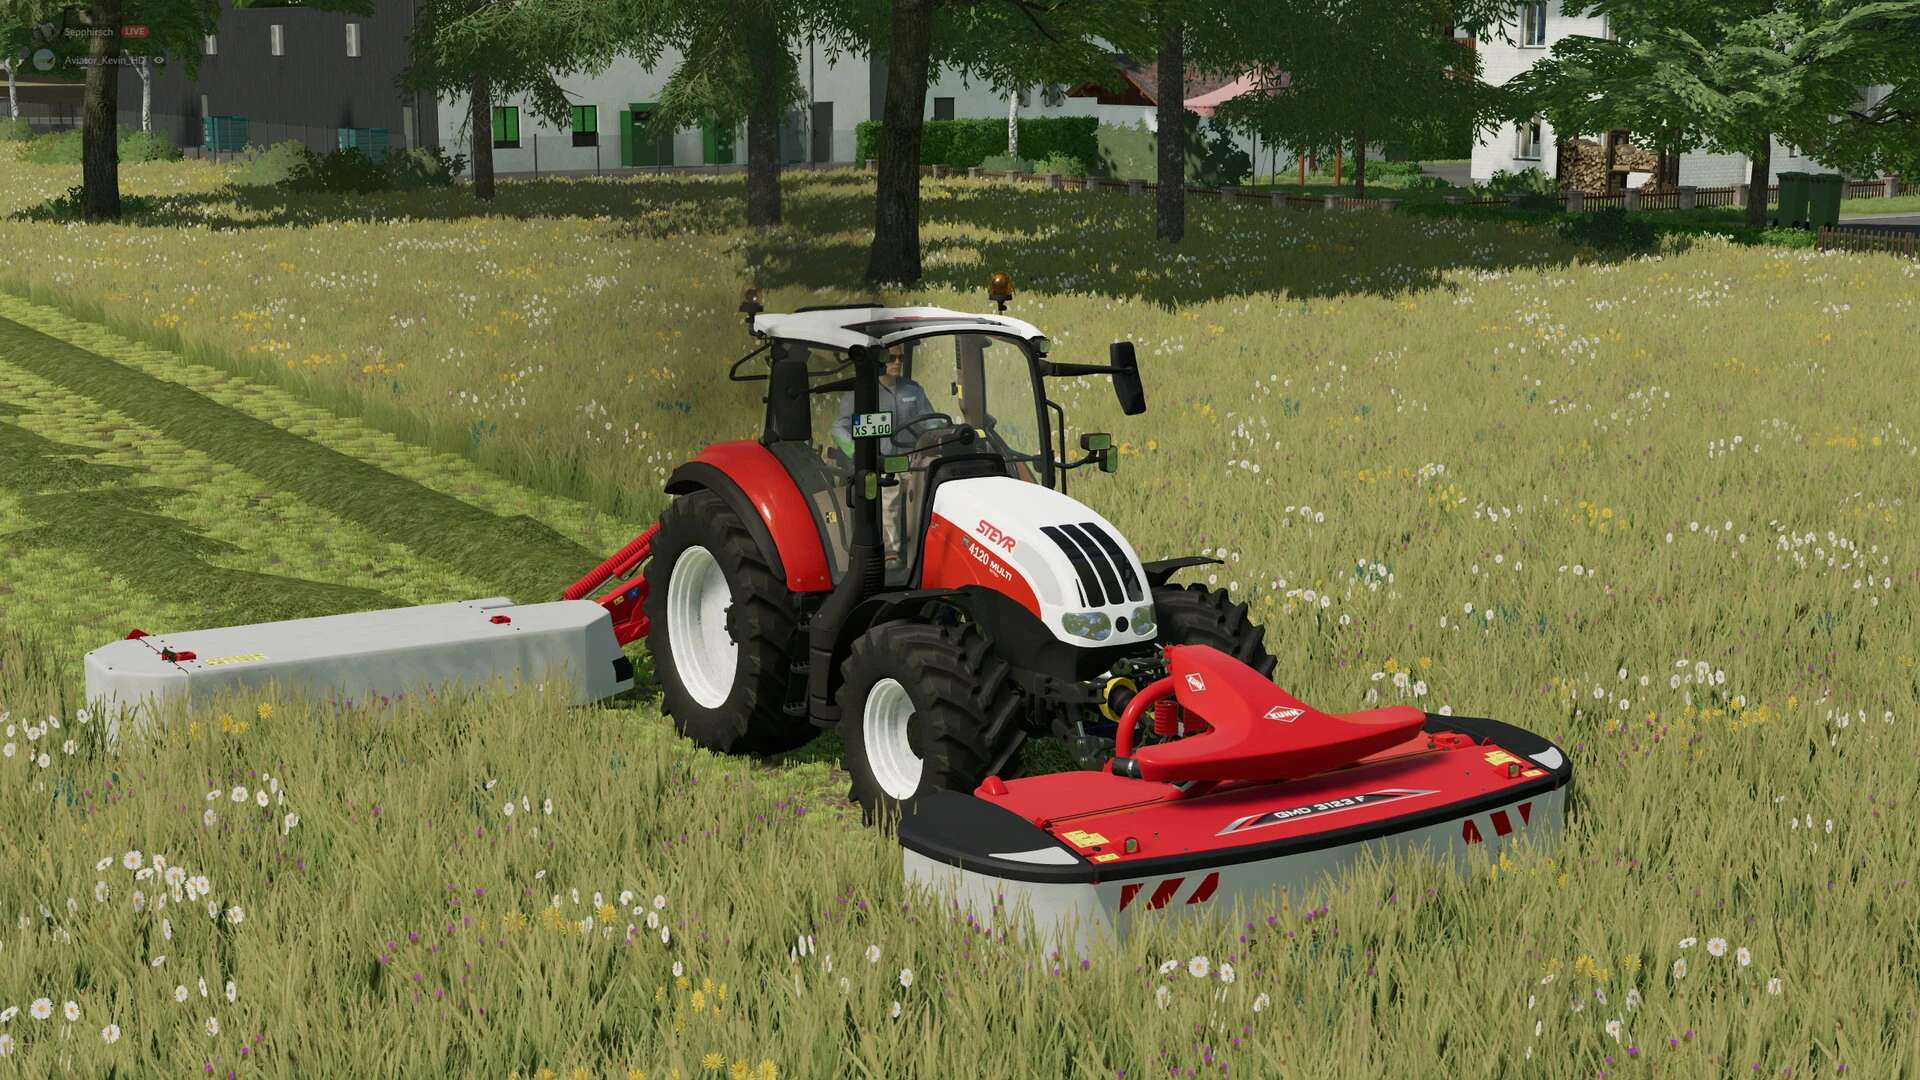 Steyr Multi Serie 2016 V10 Fs22 Farming Simulator 22 Mod Fs22 Mod 8158